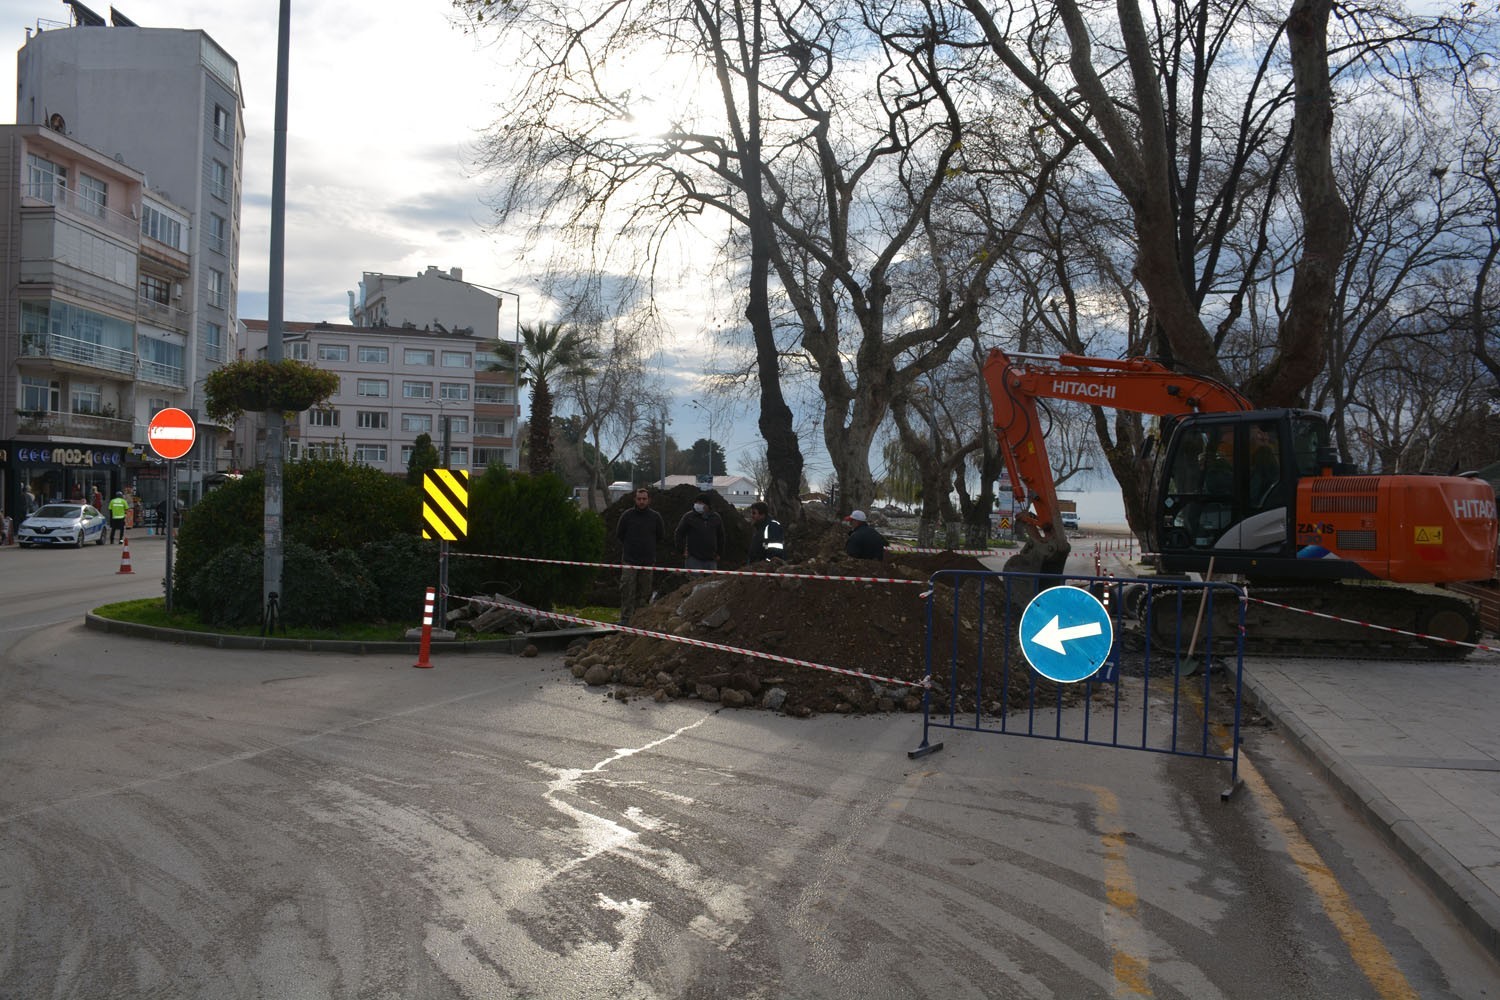 Sinop Meydan Projesi’nde yıkımlar devam ediyor #sinop